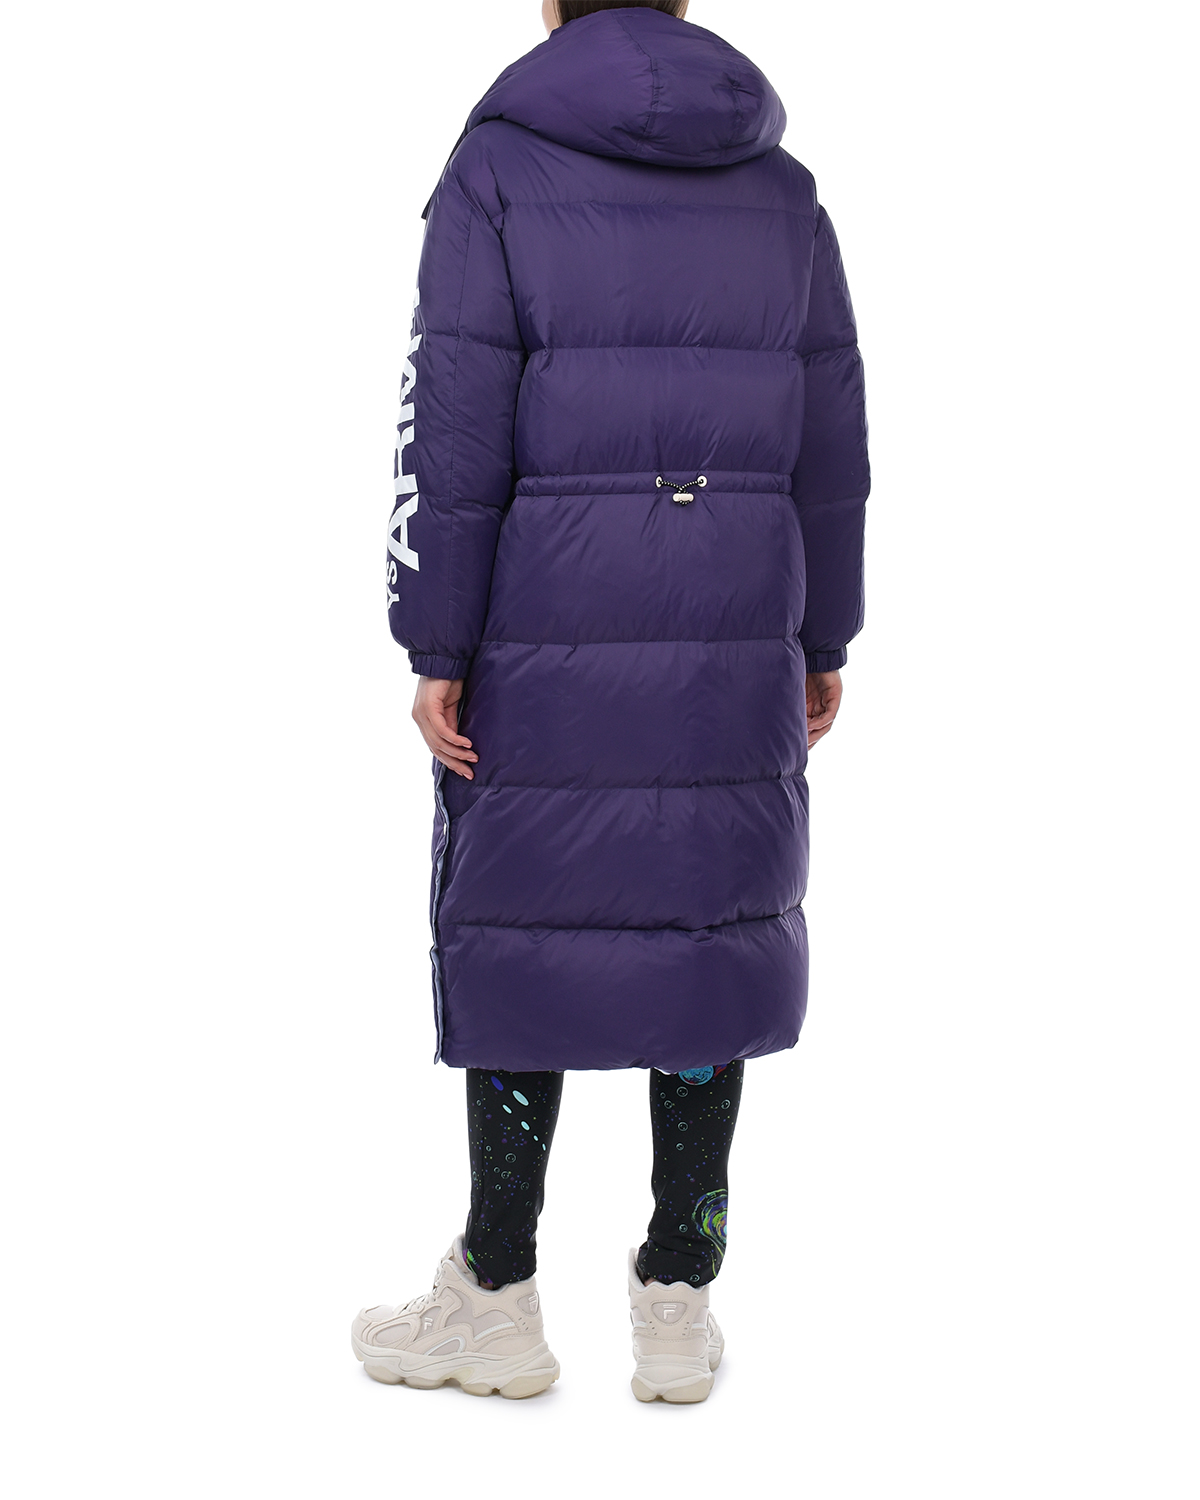 Двухстороннее пальто-пуховик, фиолетовый/сиреневый Yves Salomon, размер 38, цвет нет цвета Двухстороннее пальто-пуховик, фиолетовый/сиреневый Yves Salomon - фото 3